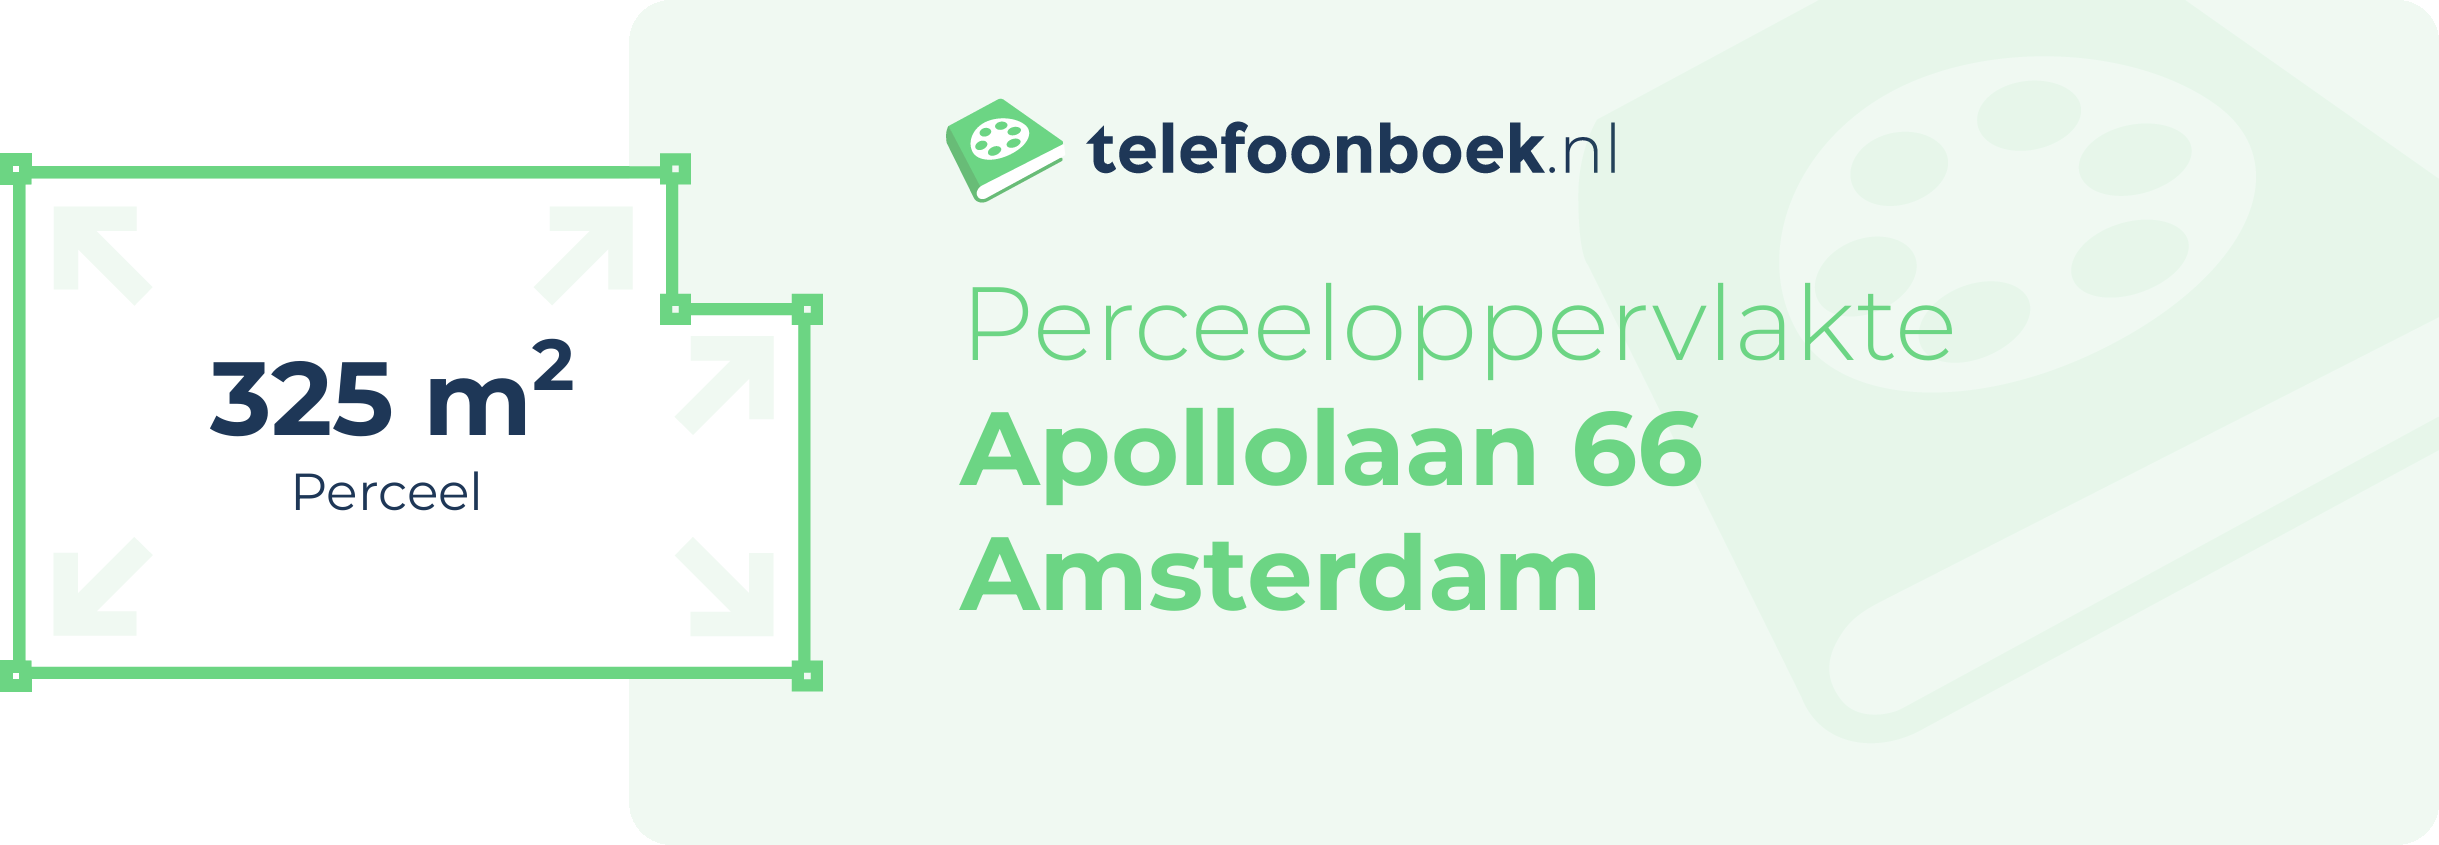 Perceeloppervlakte Apollolaan 66 Amsterdam